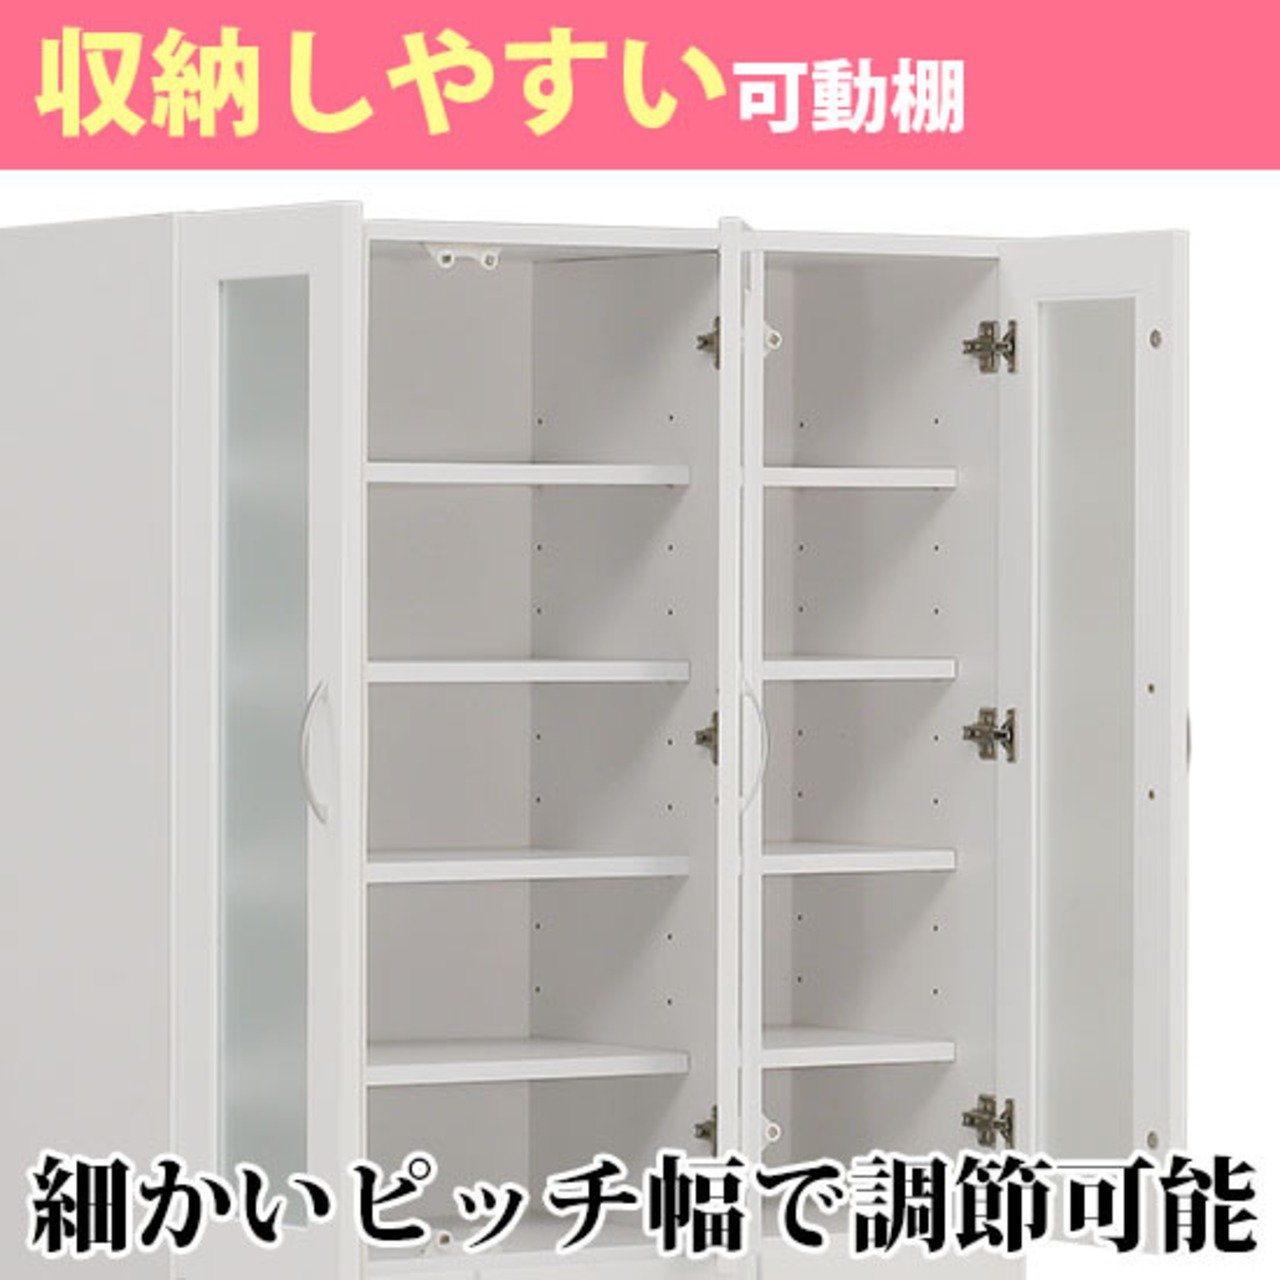 【幅90】キッチンボード ダイニングボード 食器棚 収納 (全3色)